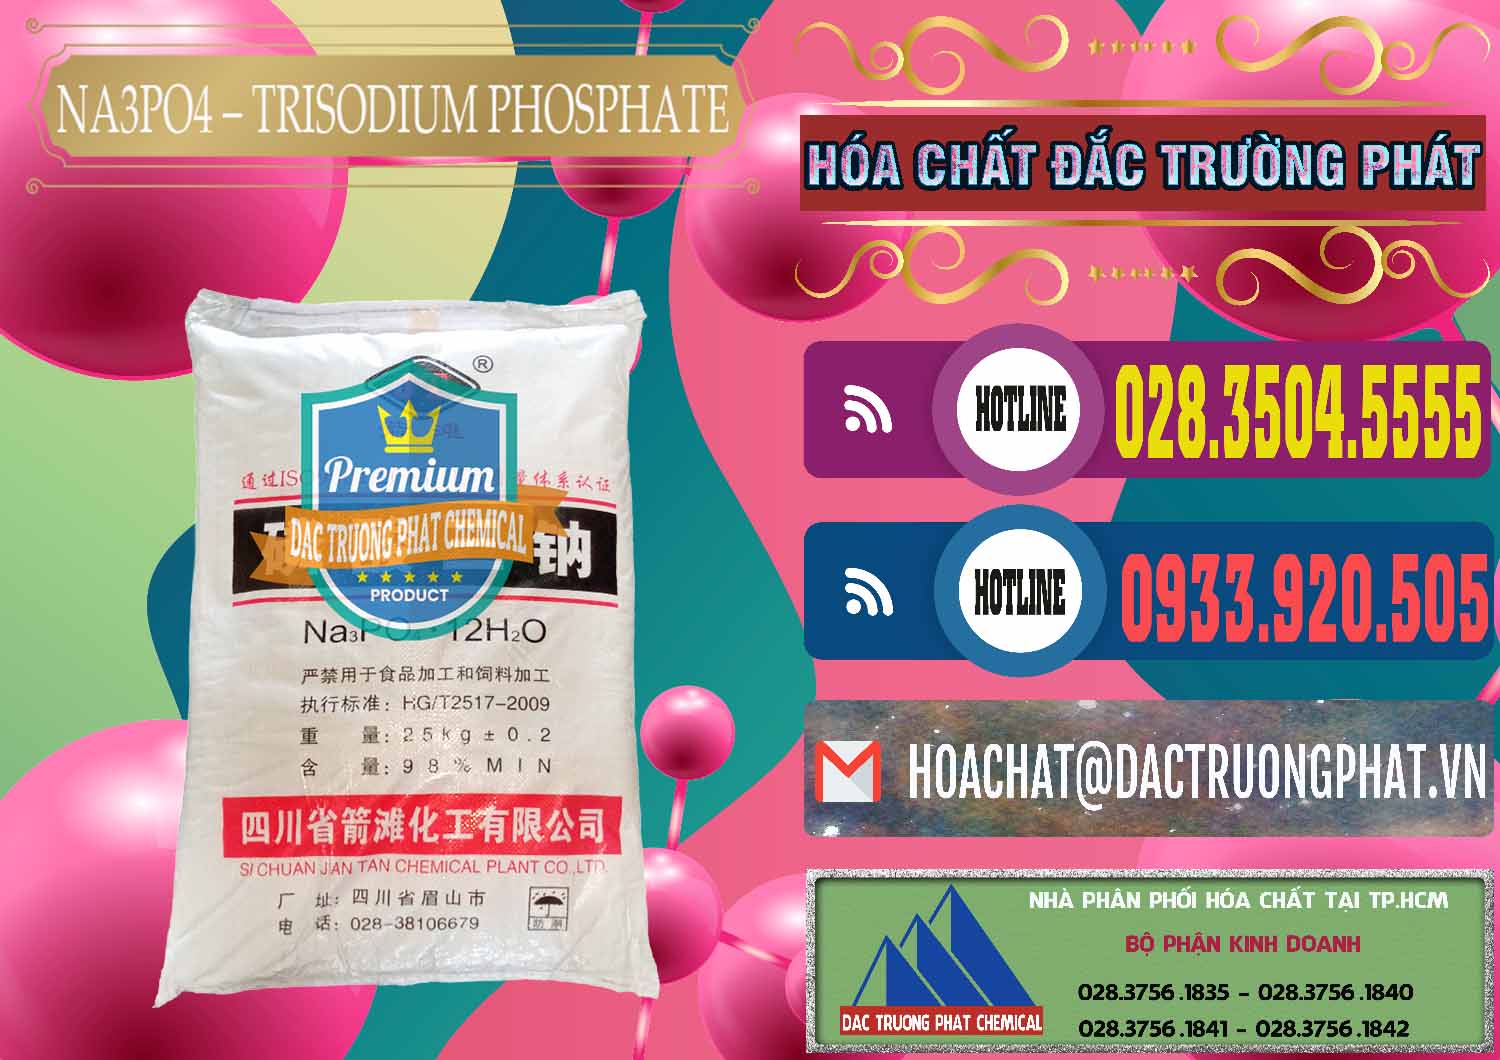 Cty chuyên bán - phân phối Na3PO4 – Trisodium Phosphate Trung Quốc China JT - 0102 - Cty phân phối và kinh doanh hóa chất tại TP.HCM - muabanhoachat.com.vn